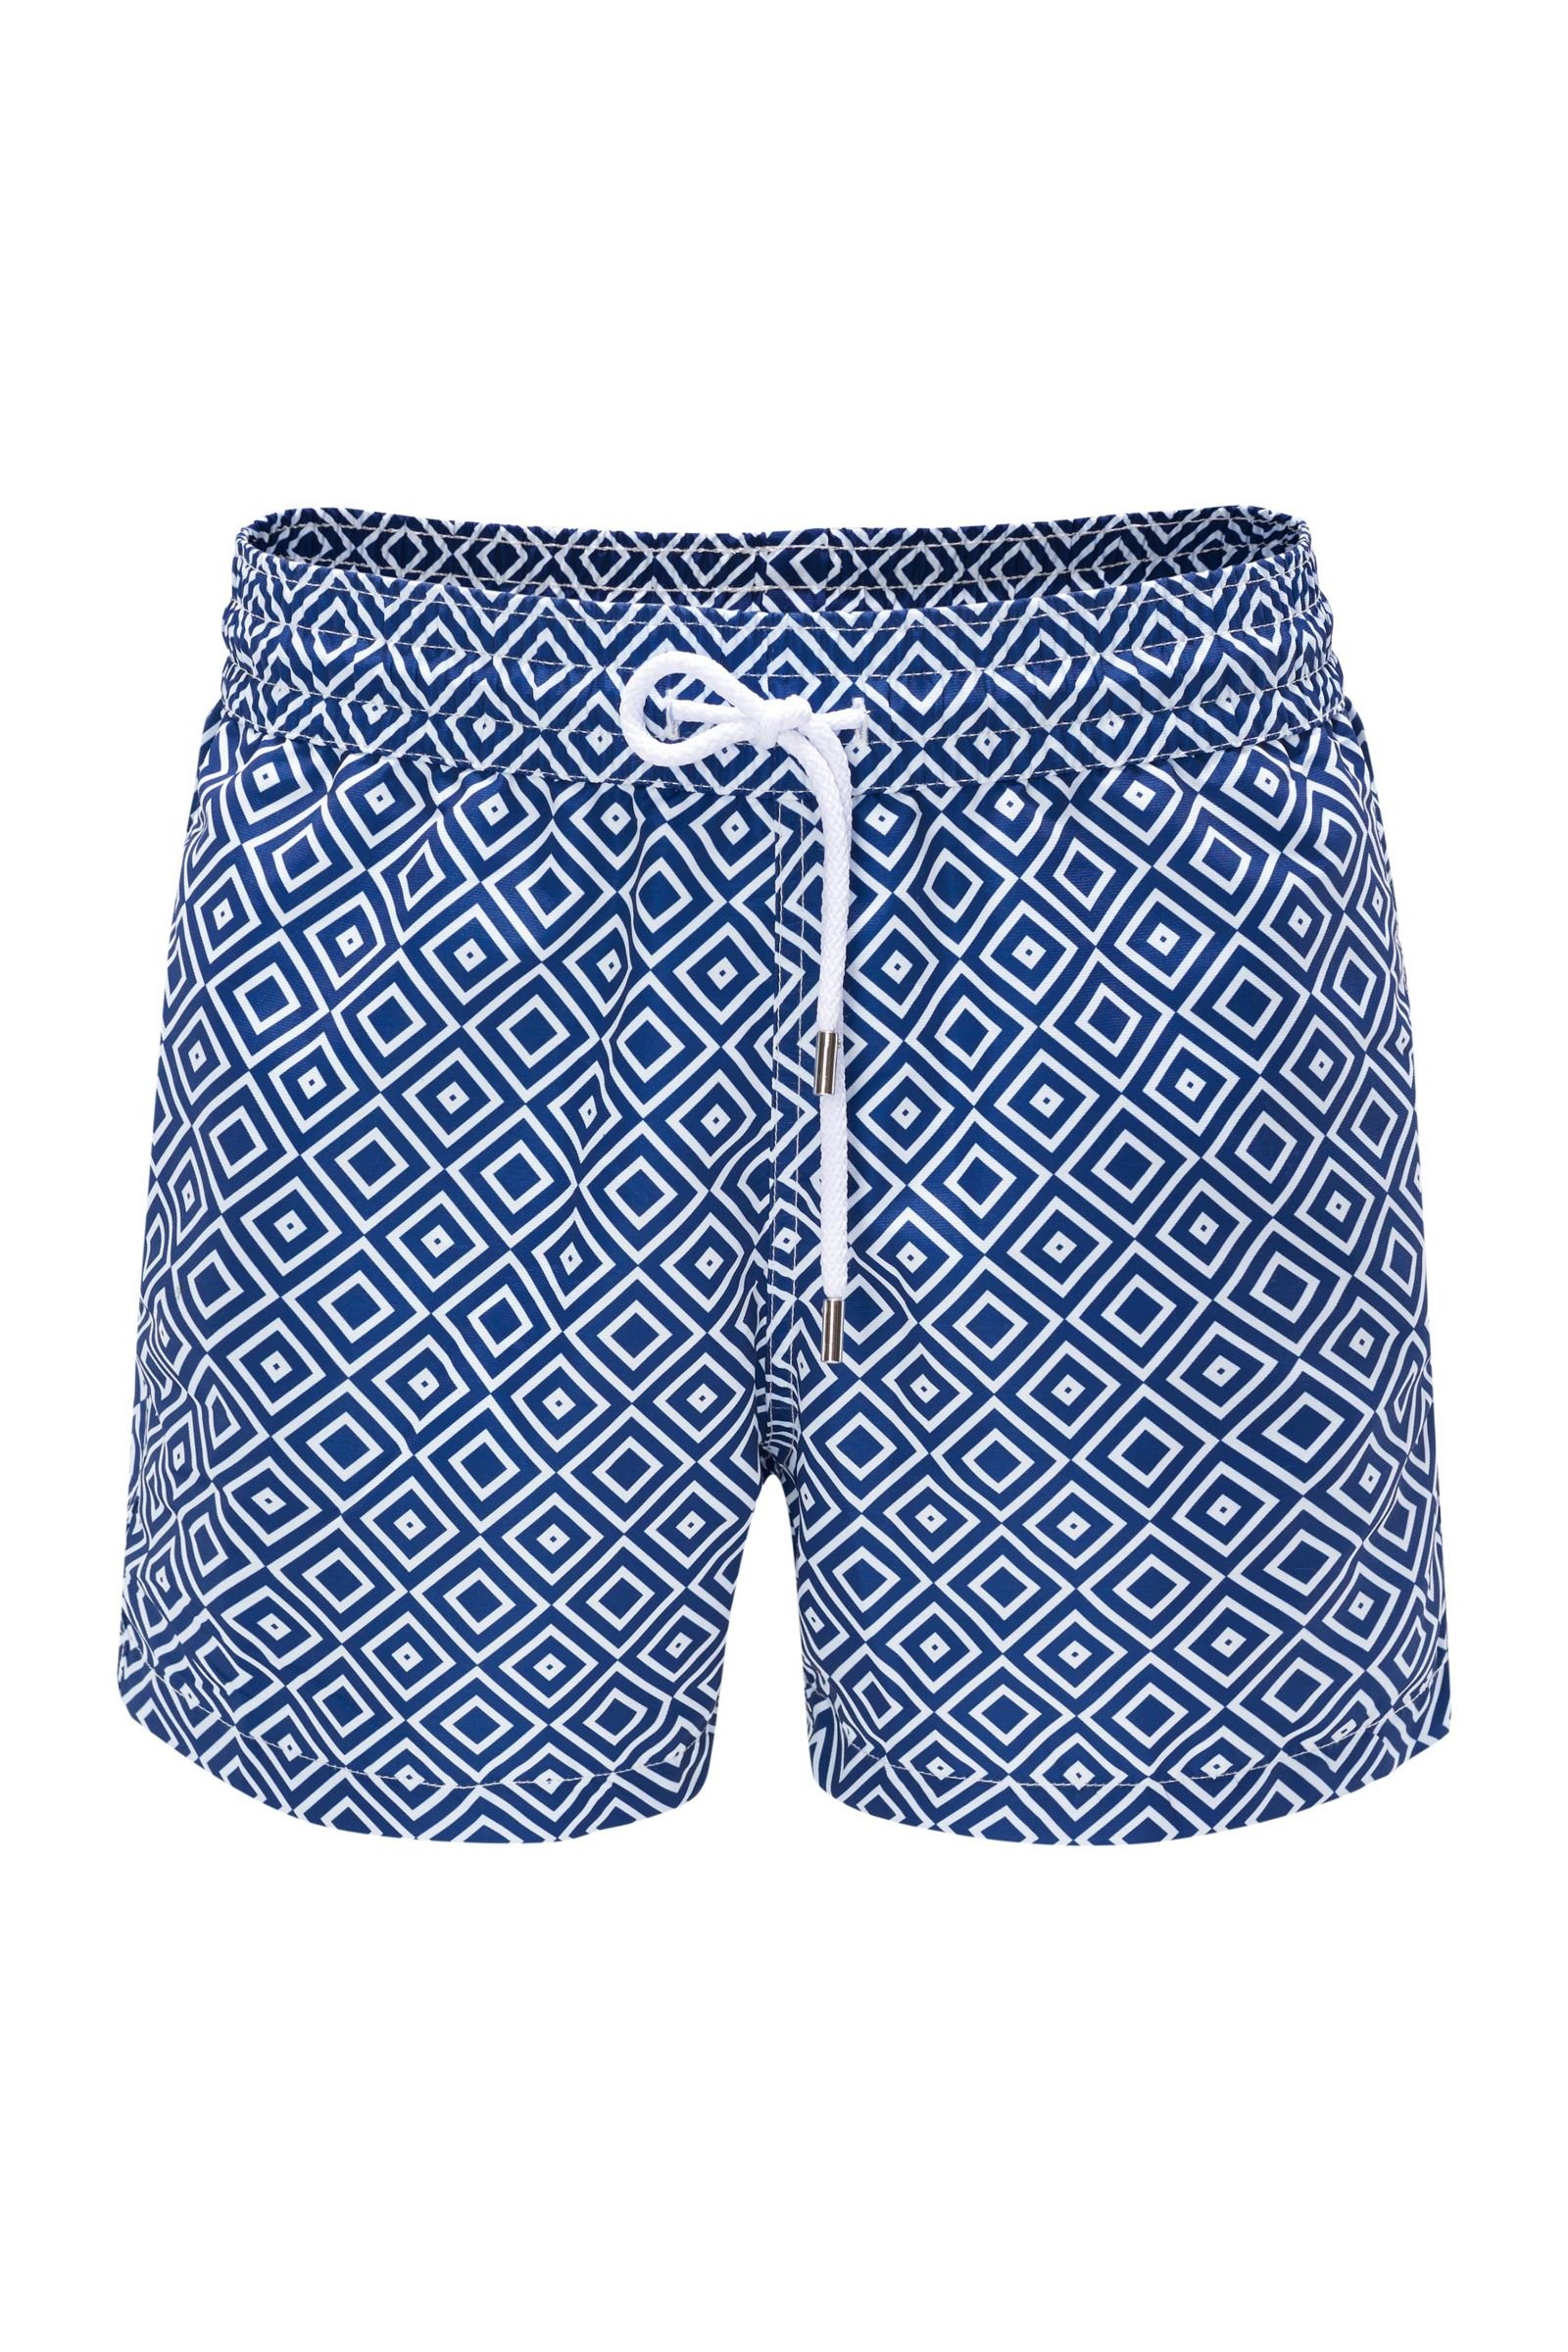 Swim shorts 'Sidewalk' navy patterned